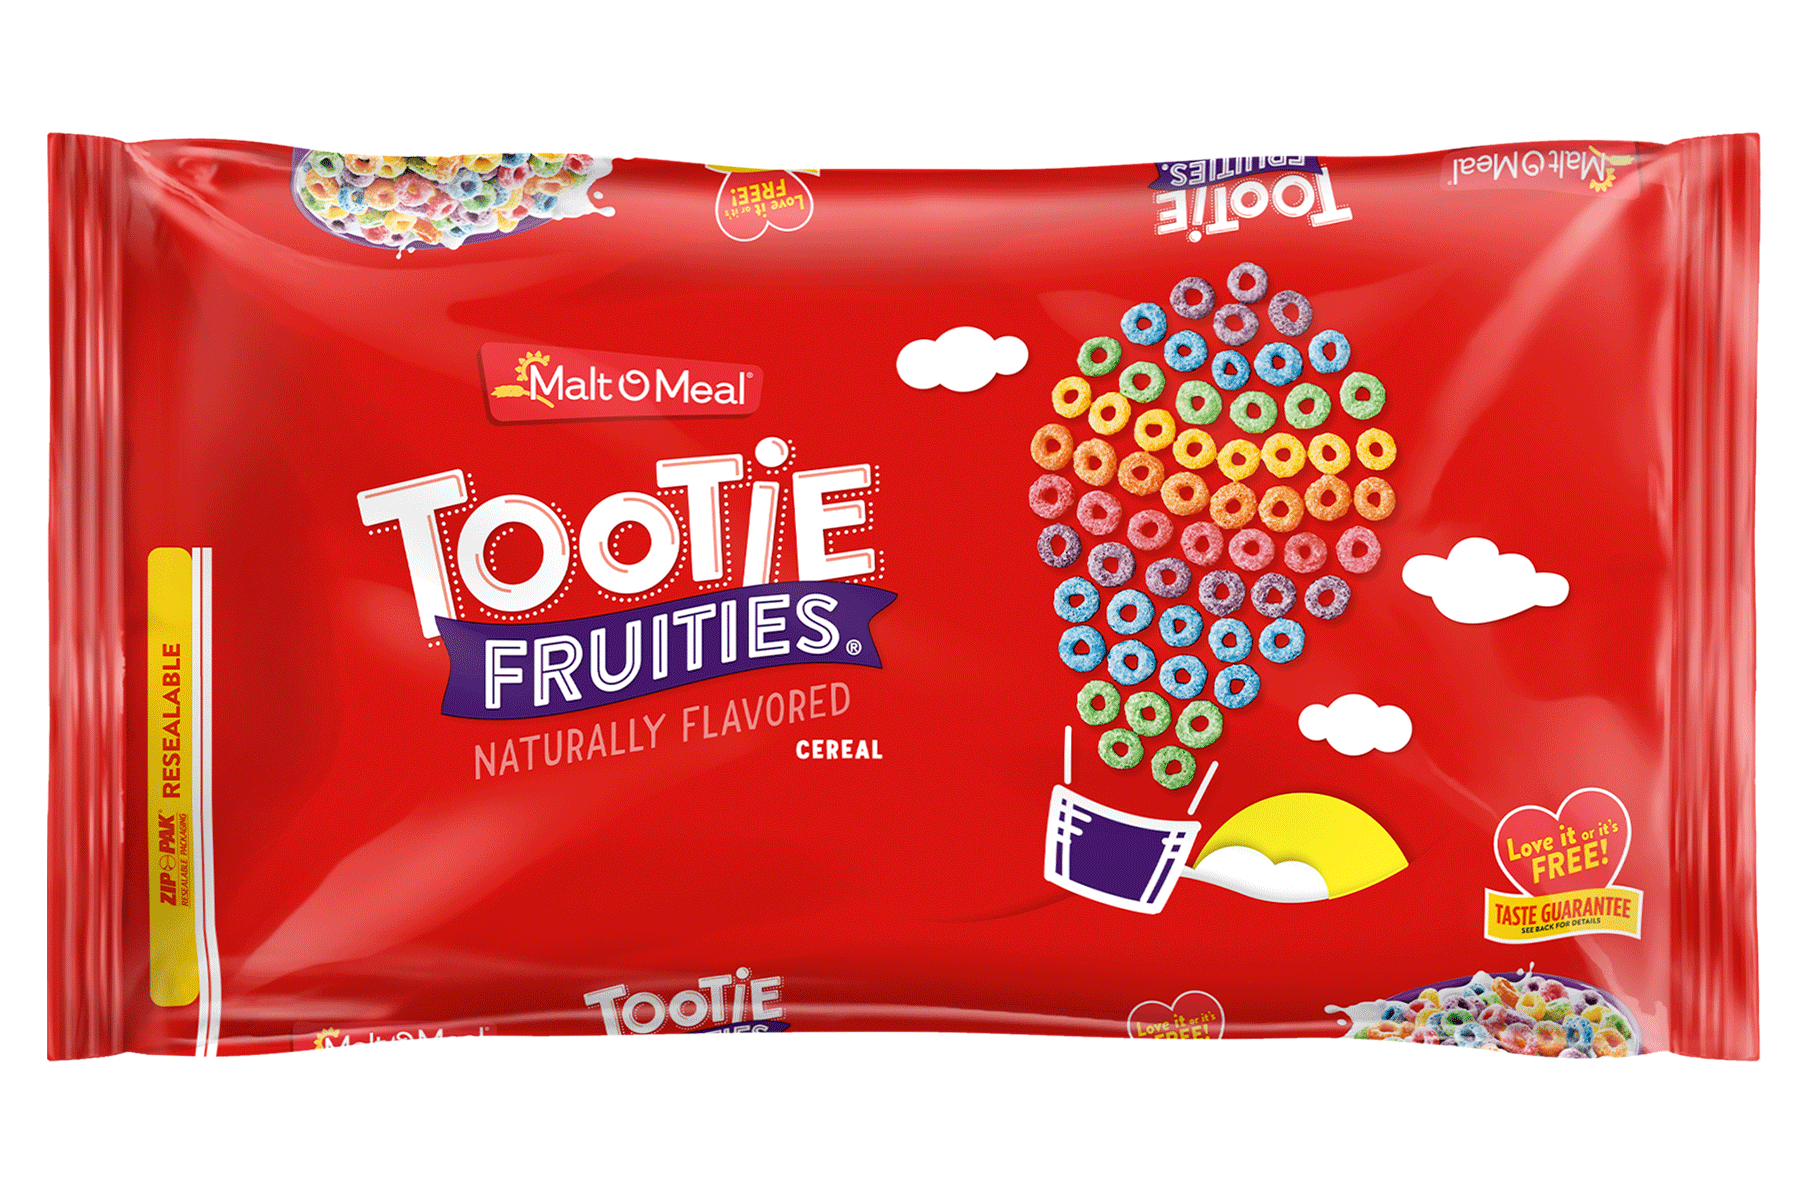 New Malt-O-Meal Tootie Fruities Cereal Bag